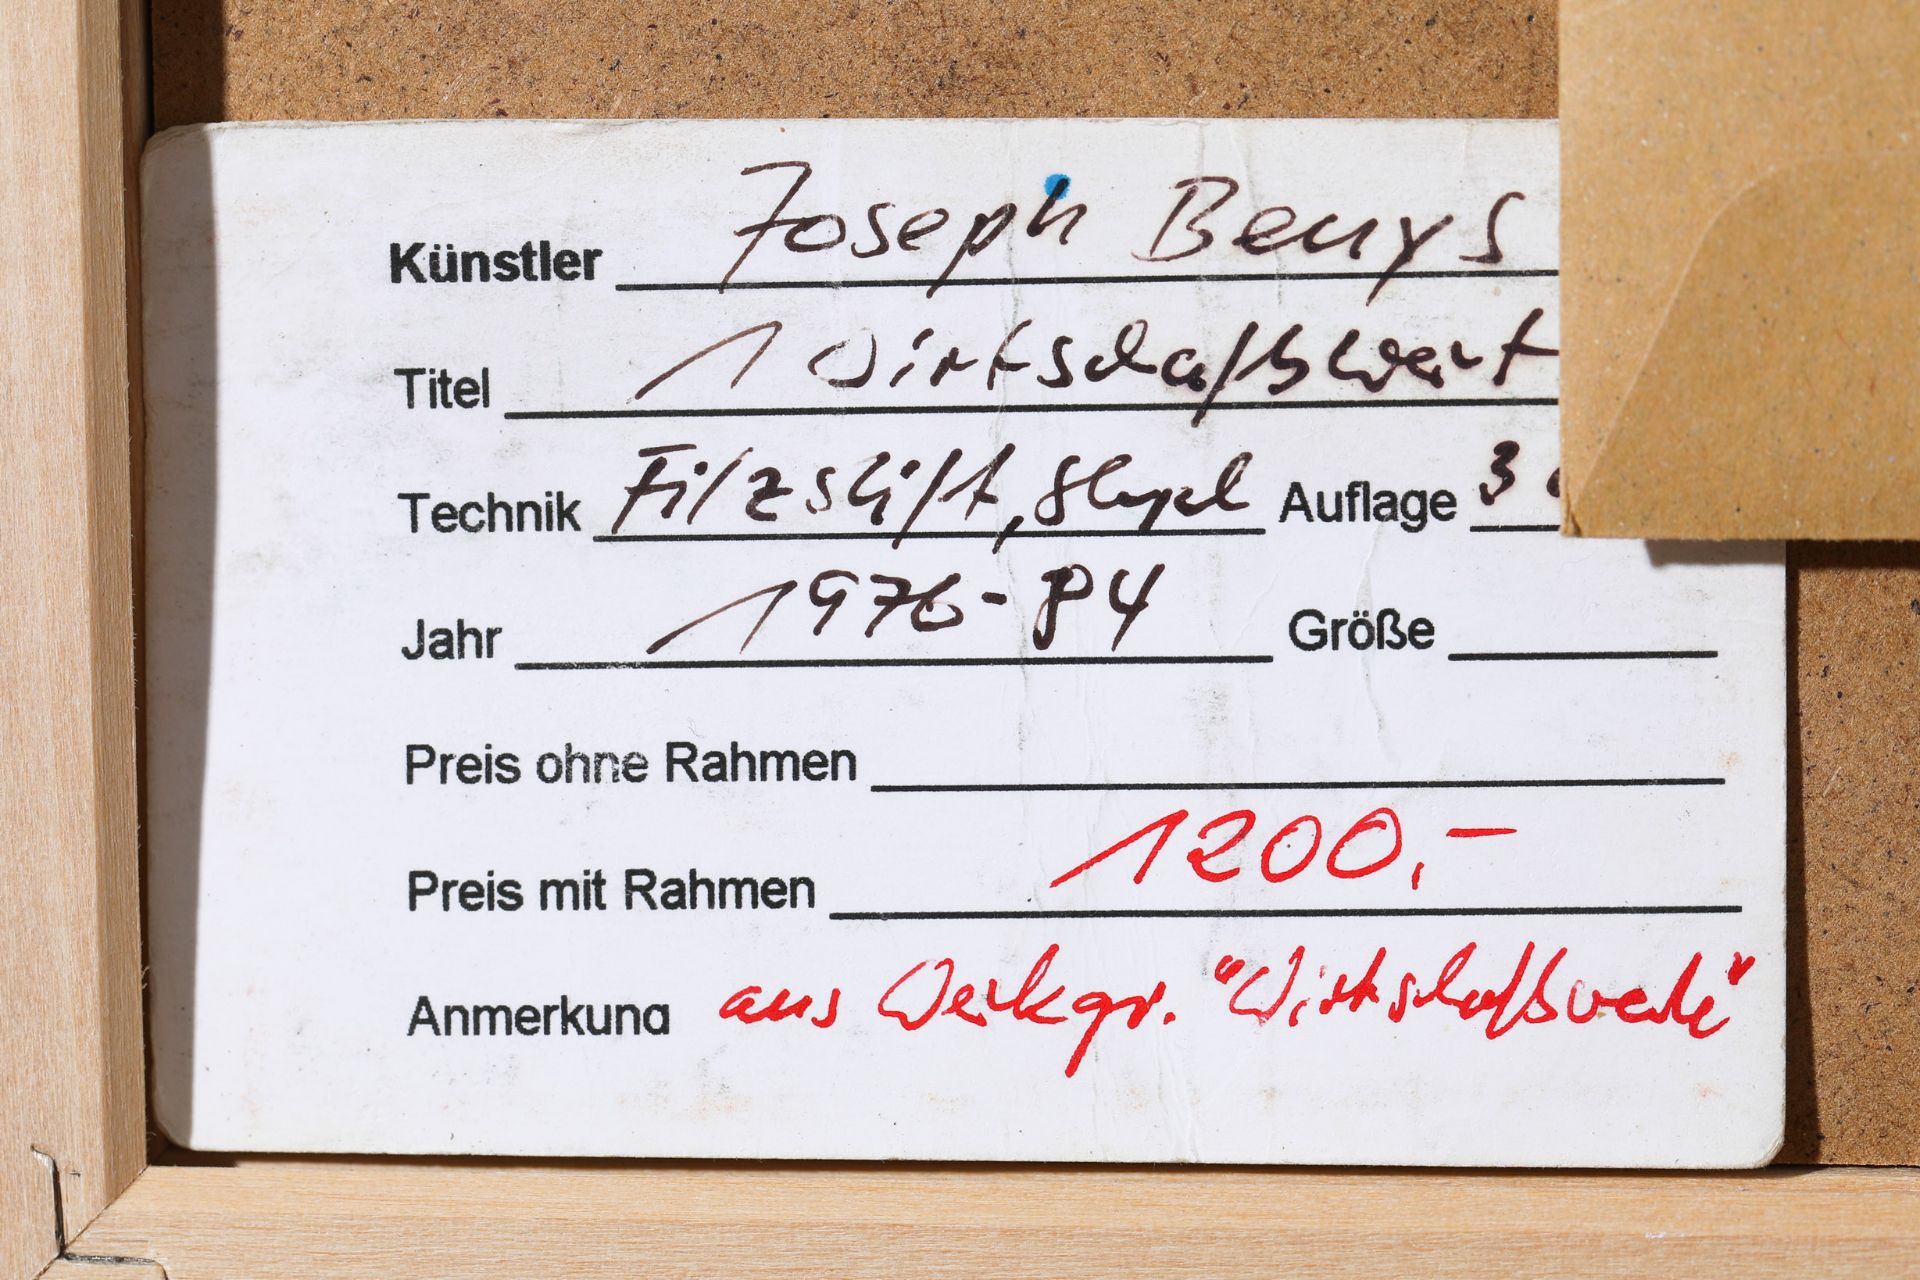 Joseph Beuys*, Wirtschaftswert Dishcloth + certificate Edition Staeck - Image 5 of 5